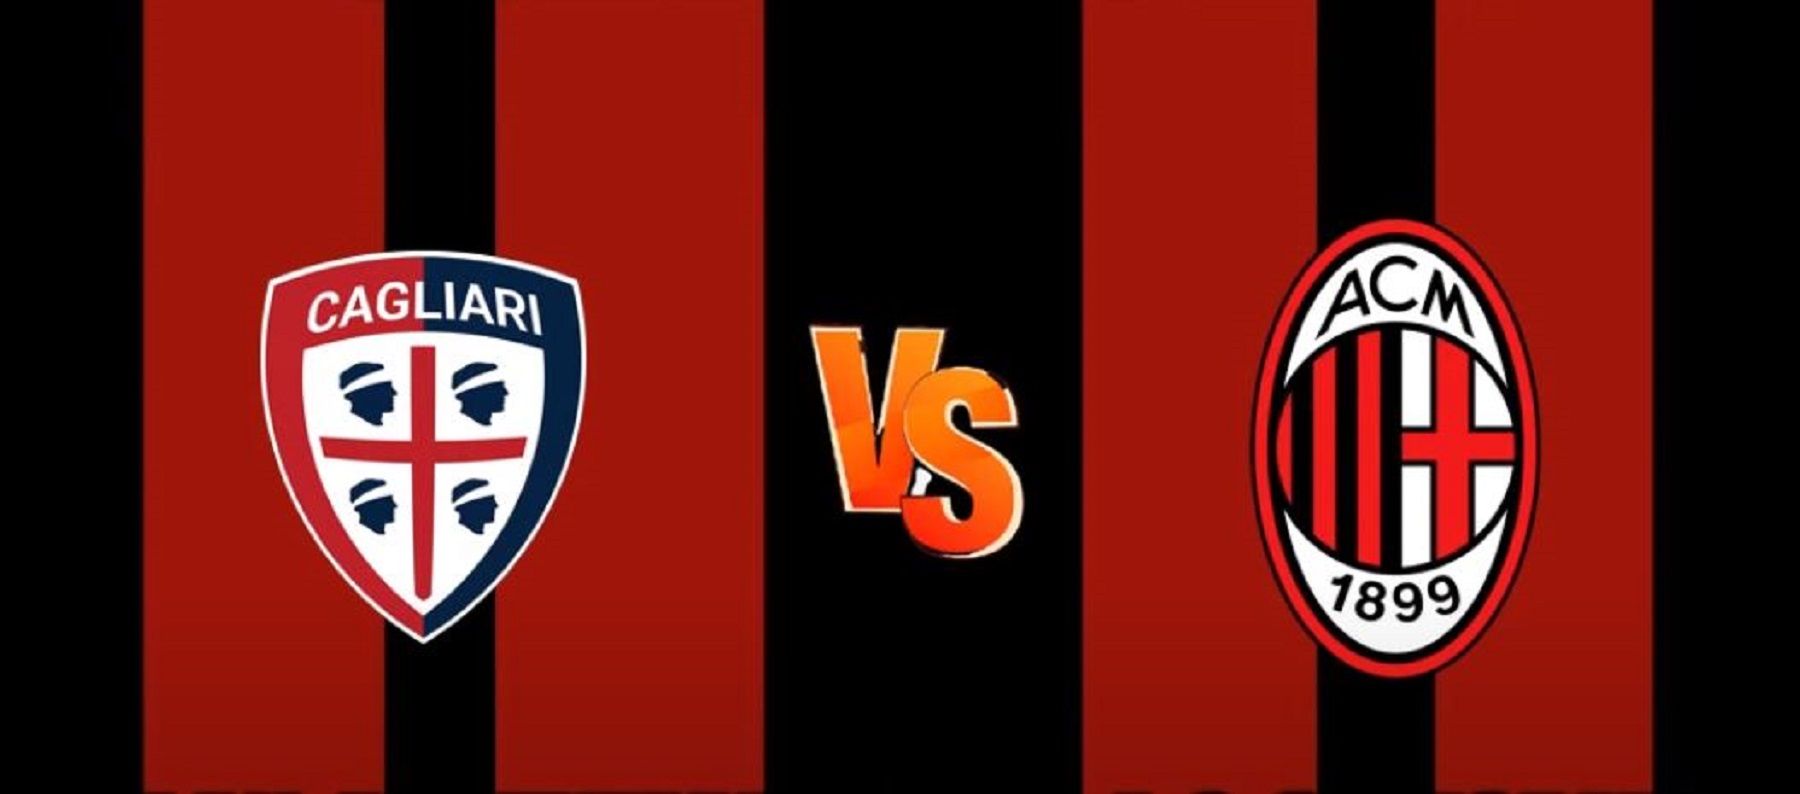 SCORE 808 Live Streaming Cagliari vs AC Milan di Seri A Hari Ini, Nonton Gratis TV Online Ada Di Sini